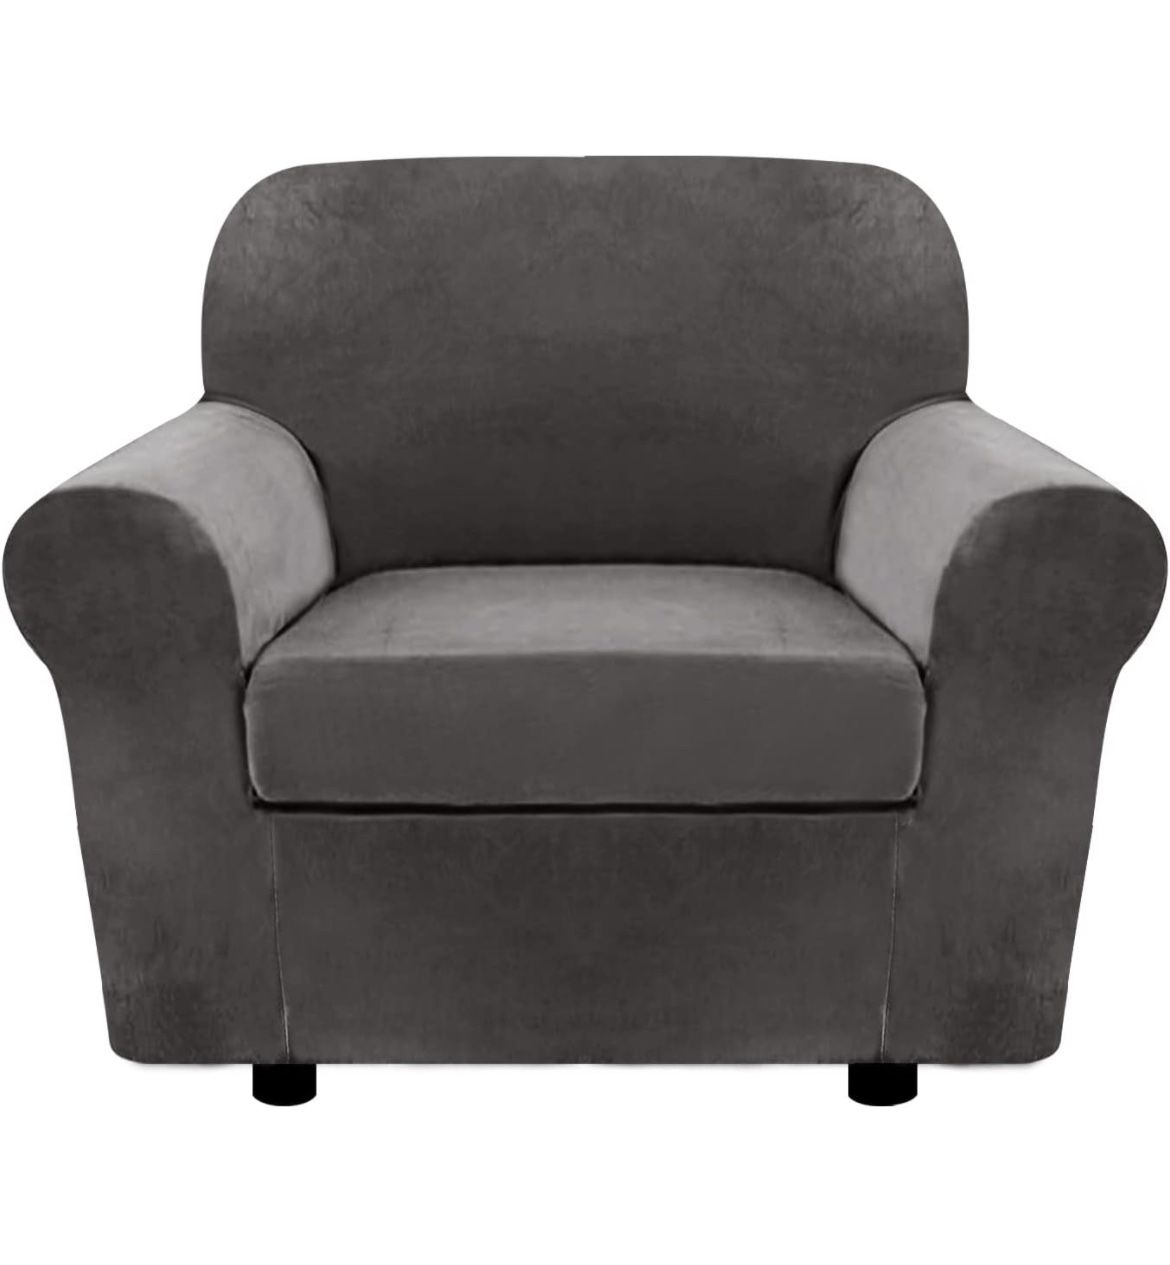 Velvet Chair Slipcover Cover Grey